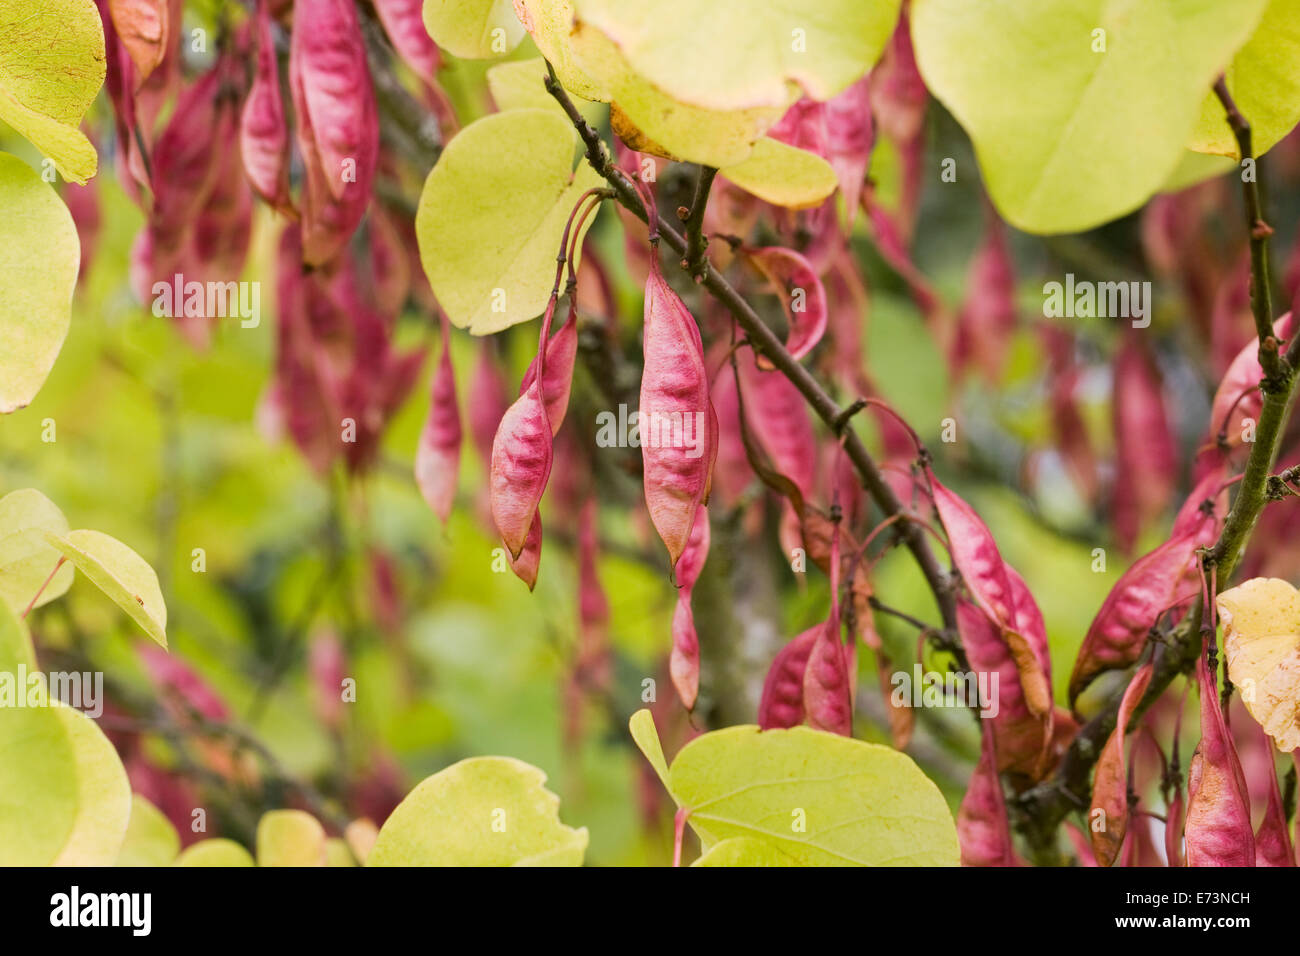 Cercis siliquastrum seed pods. Judas tree in Autumn. Stock Photo